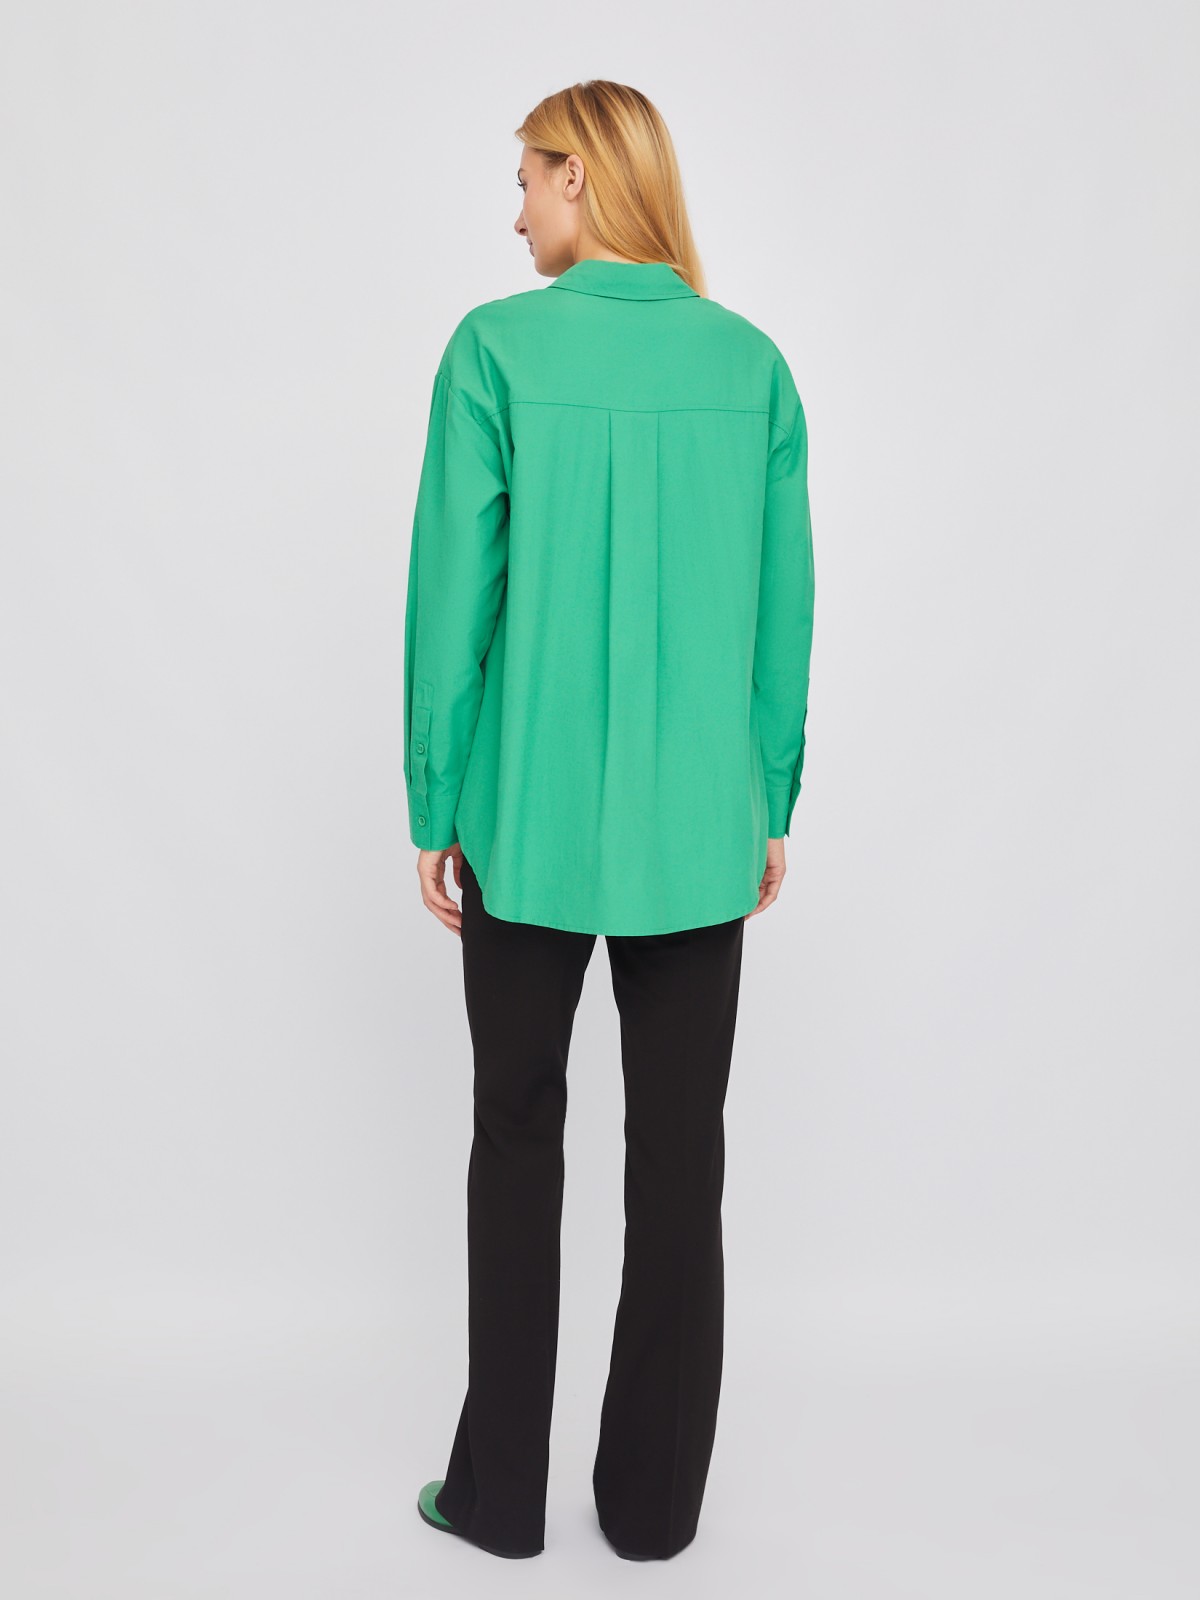 Рубашка свободного силуэта с длинным рукавом zolla 02411117Y553, цвет зеленый, размер XS - фото 6